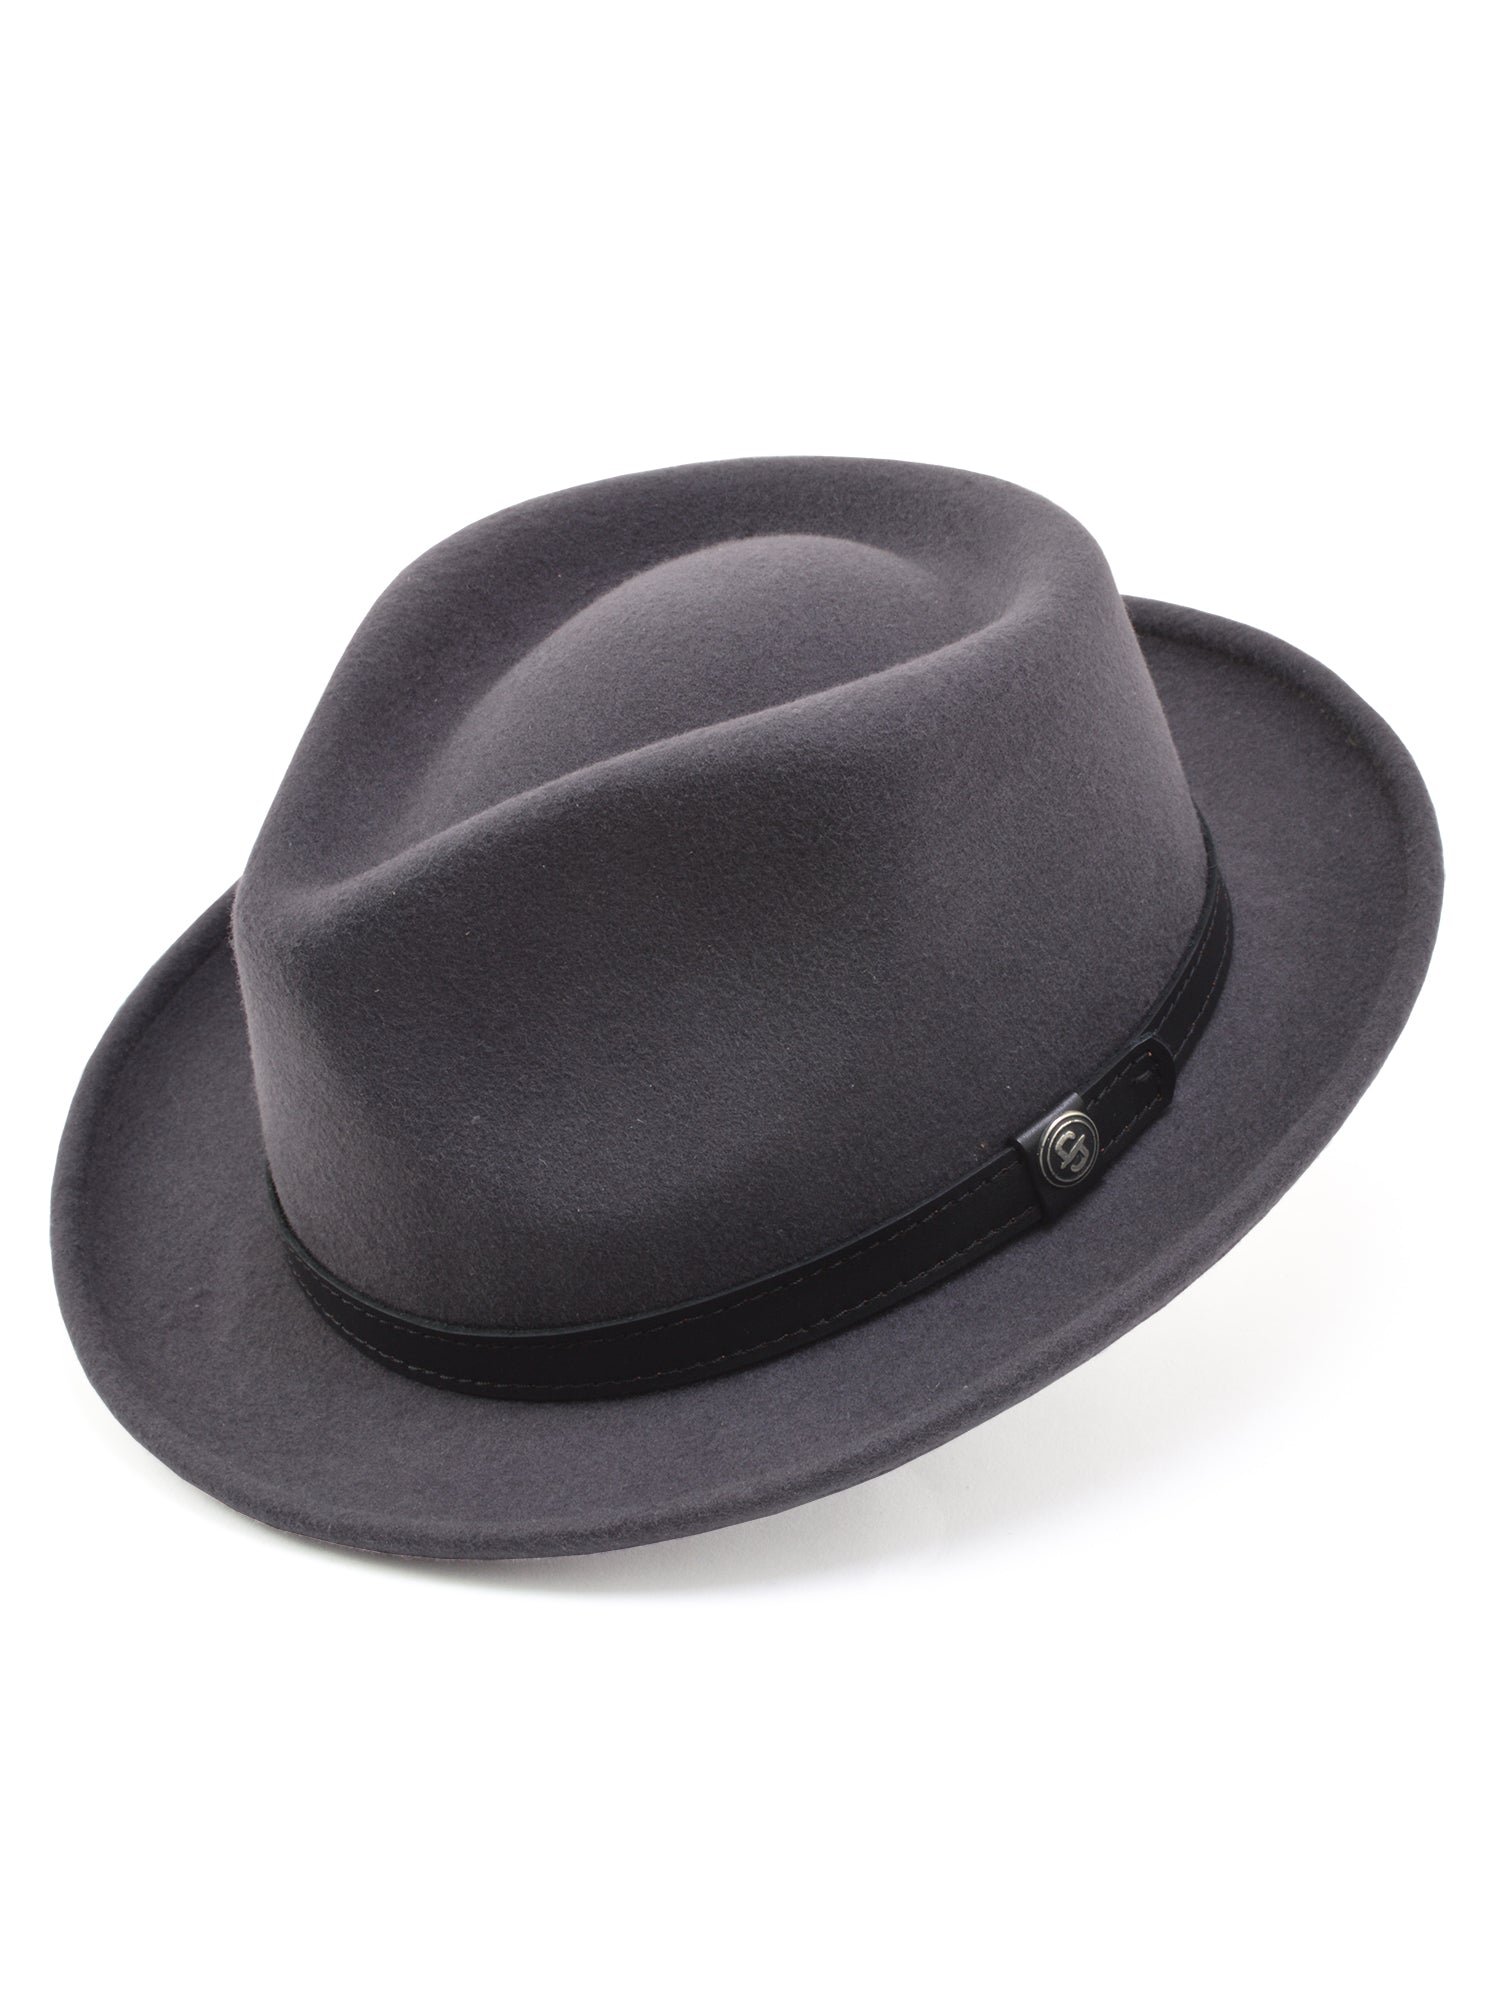 Stetson 100% Wool Felt Prof Hats in Caribou